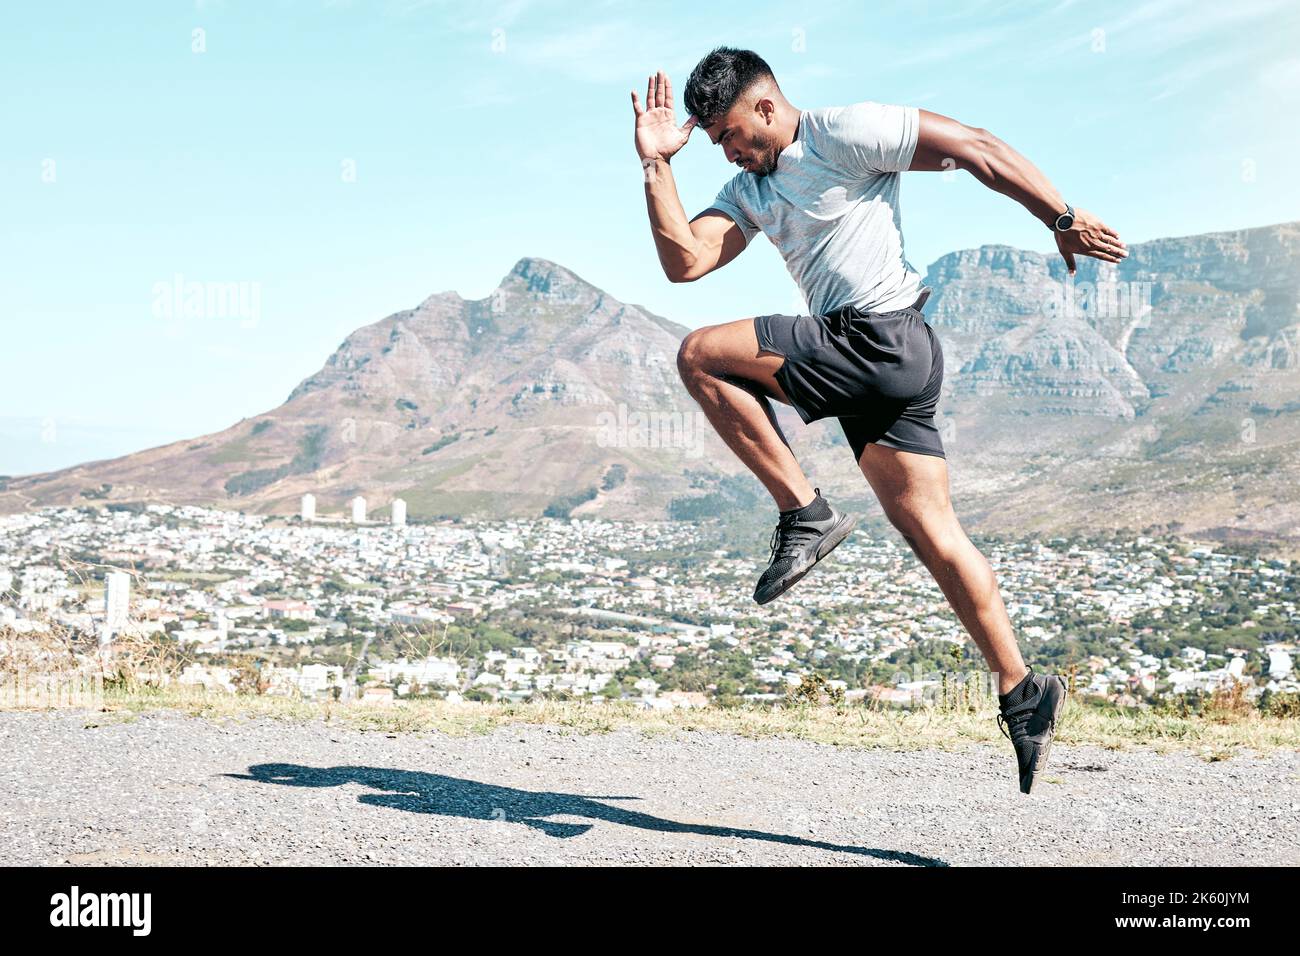 Sportlicher junger Mann mit gemischtem Rennen, der in der Natur im Freien sprintet. Passen Sie gut aussehenden hispanischen männlichen Athleten Mann für einen Lauf. Fitness Cardio und Ausdauer Stockfoto